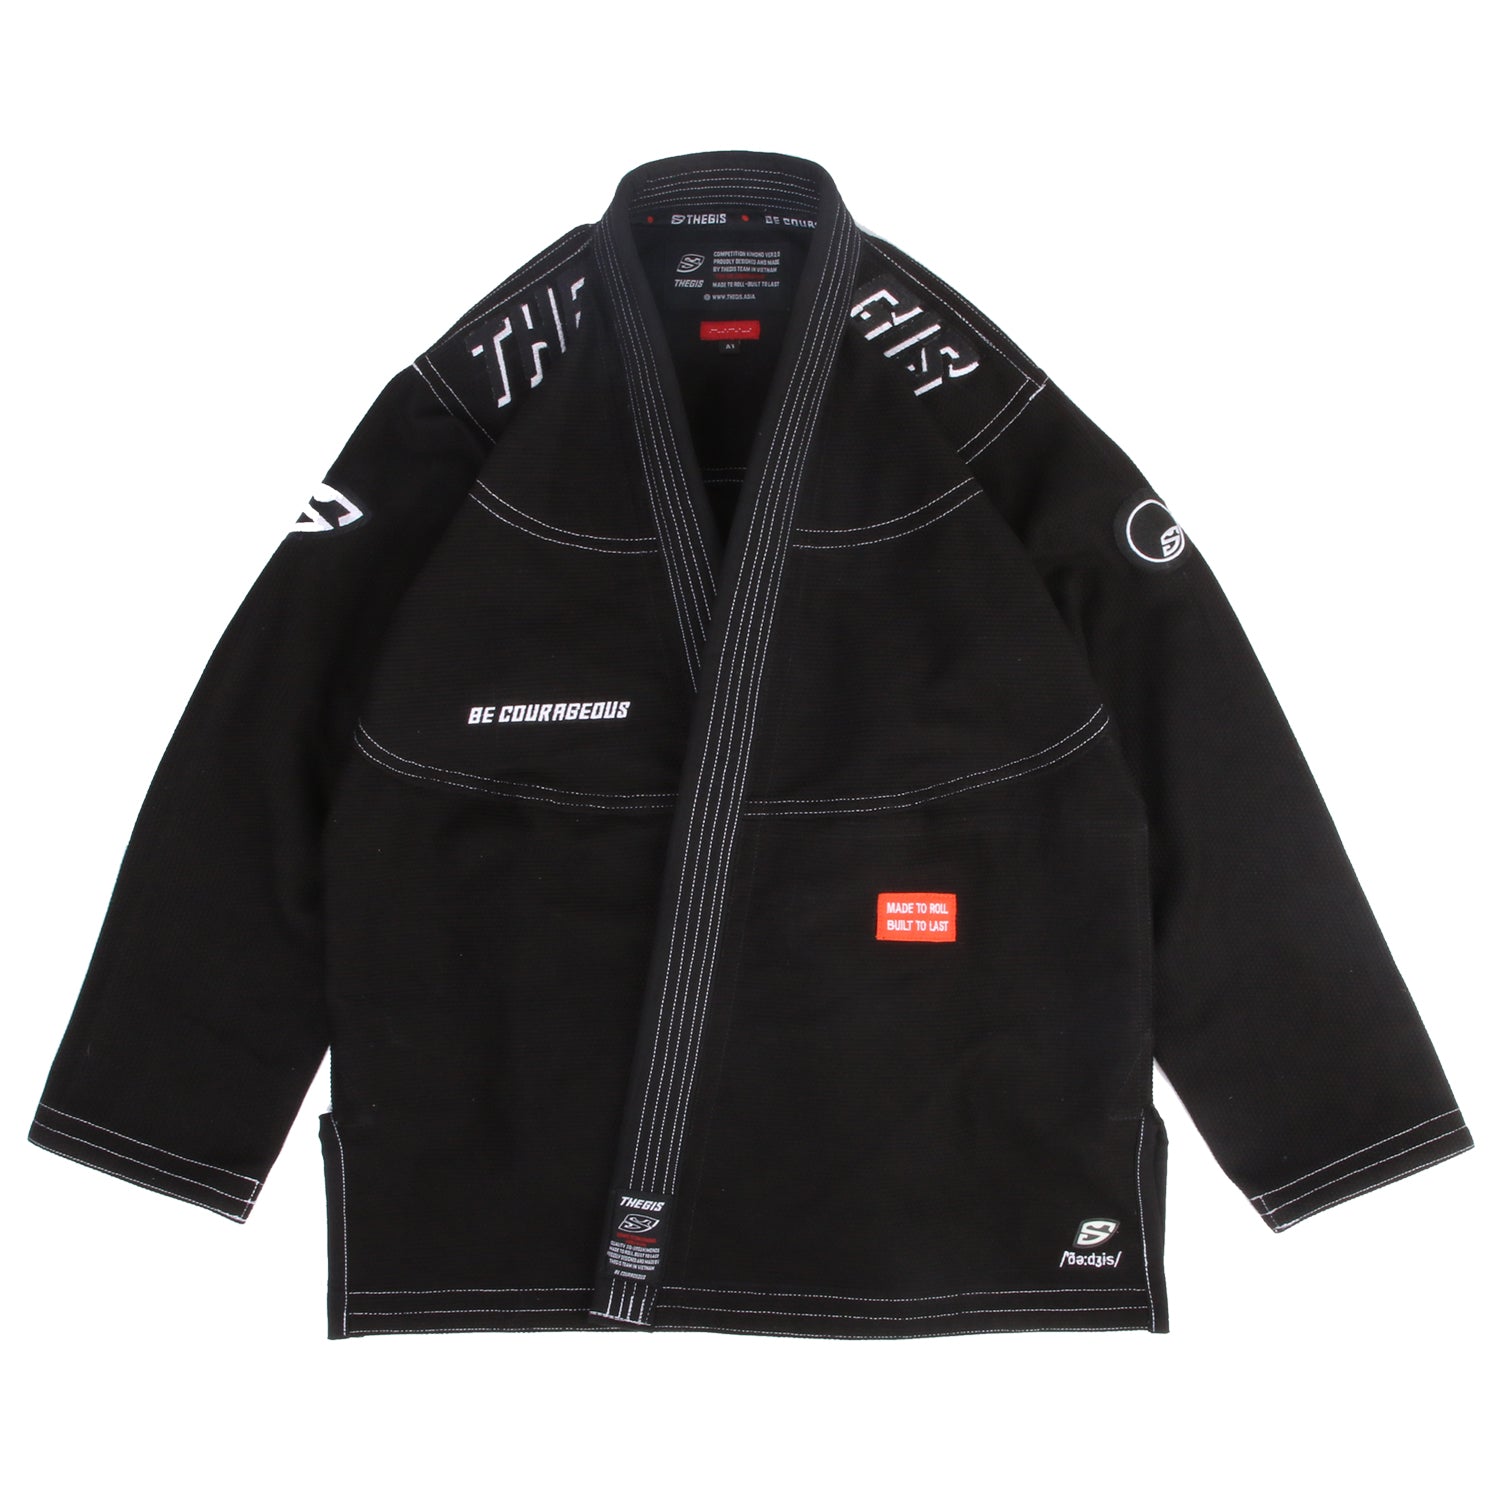 Võ phục Jiu Jitsu V2 Kimonos Premium